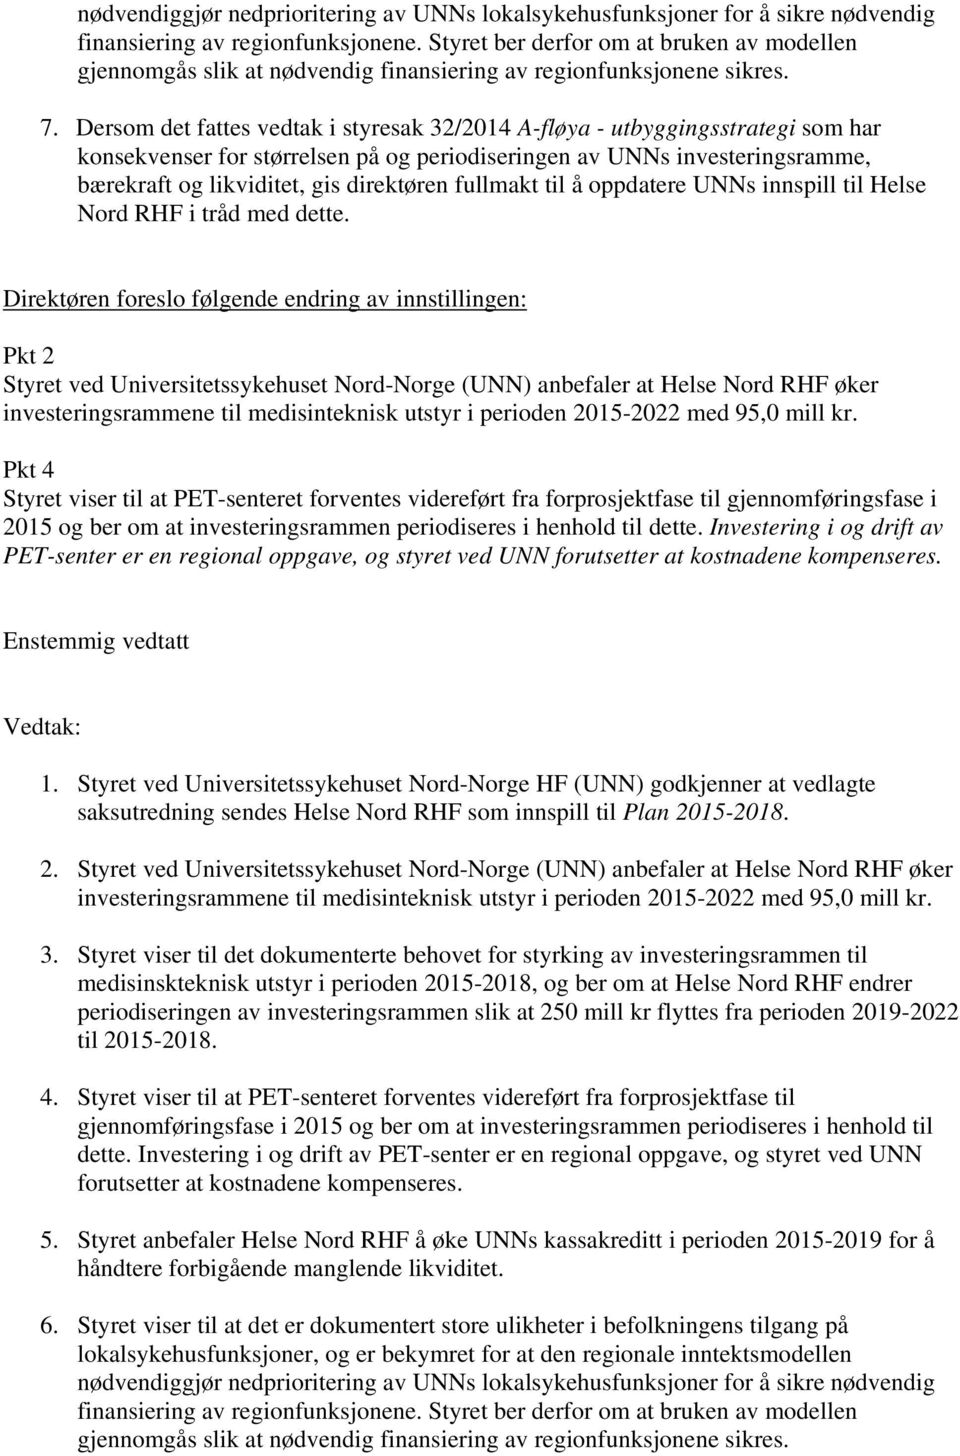 Dersom det fattes vedtak i styresak 32/2014 A-fløya - utbyggingsstrategi som har konsekvenser for størrelsen på og periodiseringen av UNNs investeringsramme, bærekraft og likviditet, gis direktøren